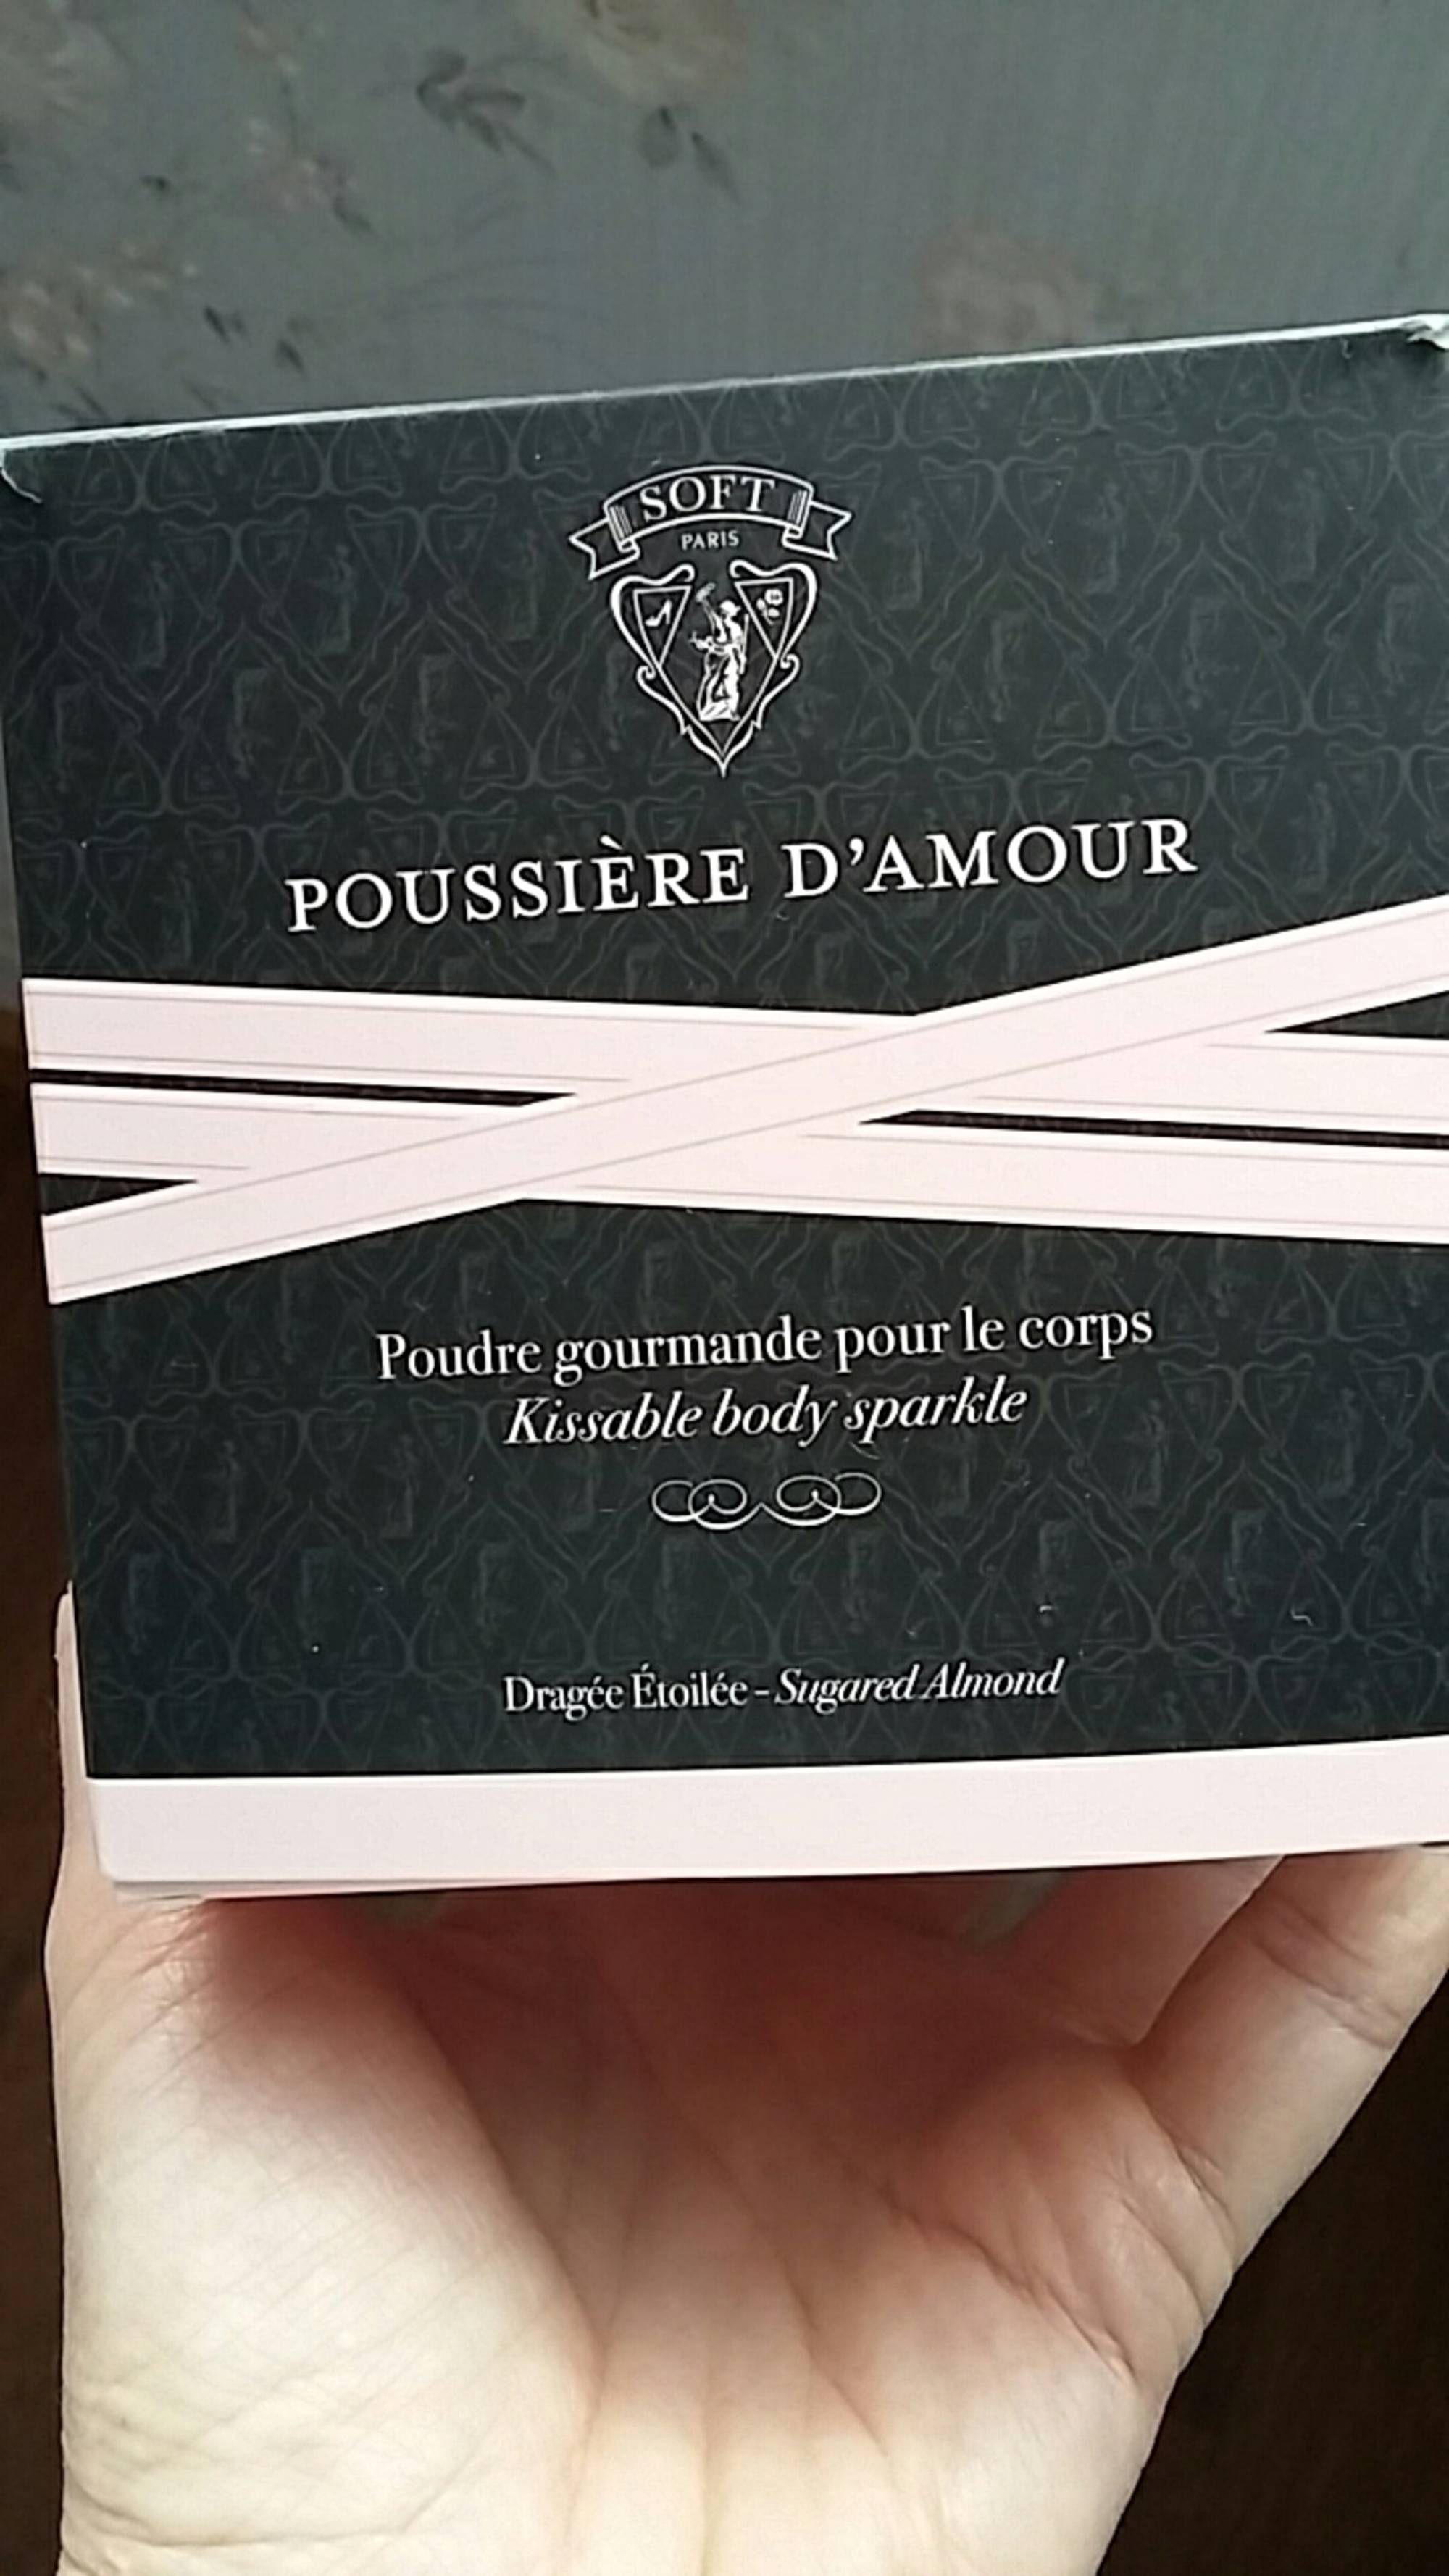 SOFT PARIS - Poussière d'amour - Poudre gourmande pour le corps